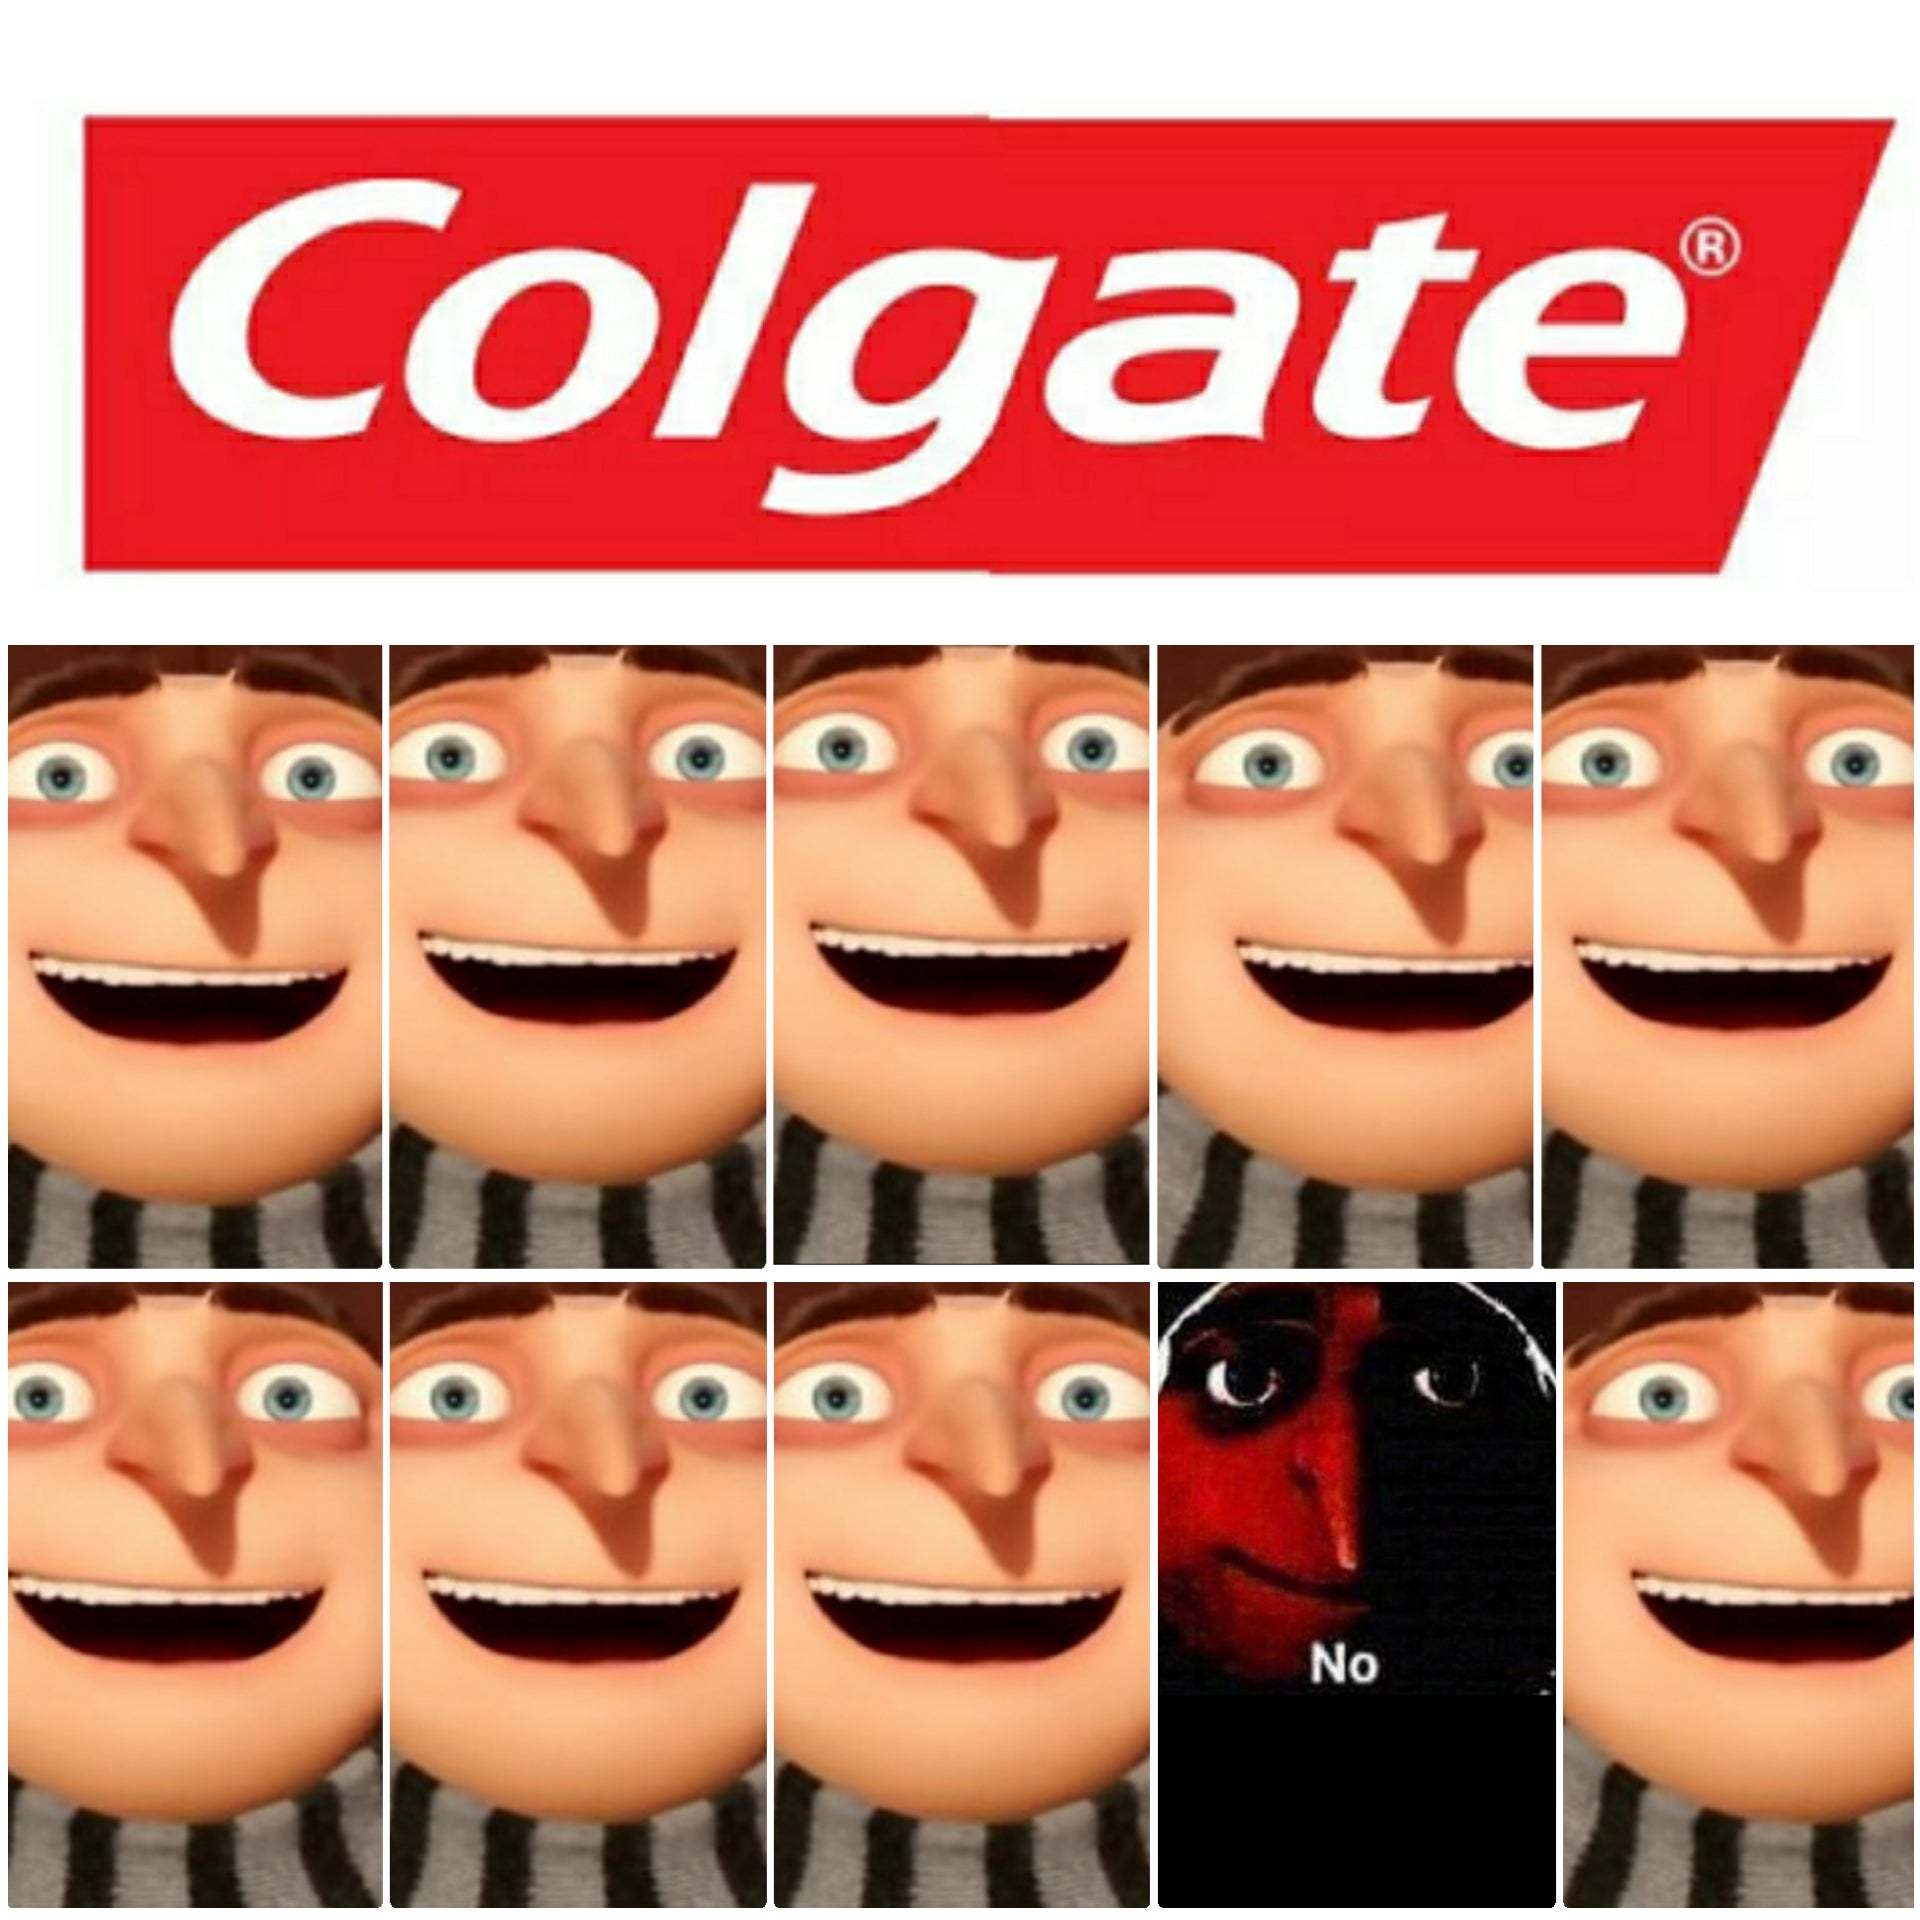 9/10 dentistas recomiendan Colgarte - meme